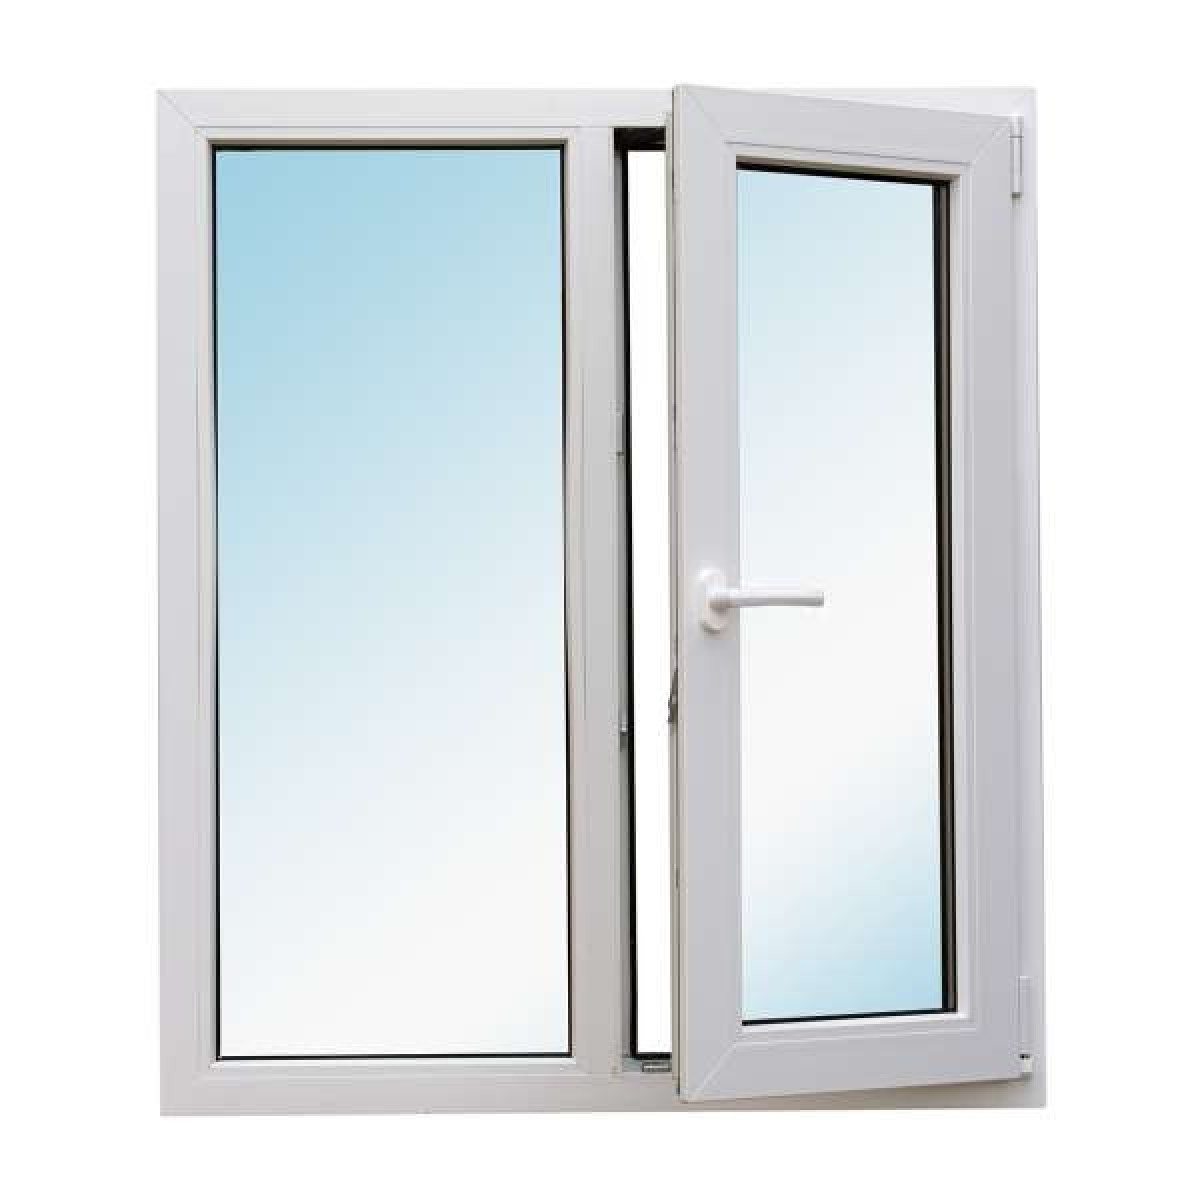 Металлопластиковое окно Bena двухстворчатое открывающееся 1280 х 1400 мм Белый (S300GFBJRARDRE) 